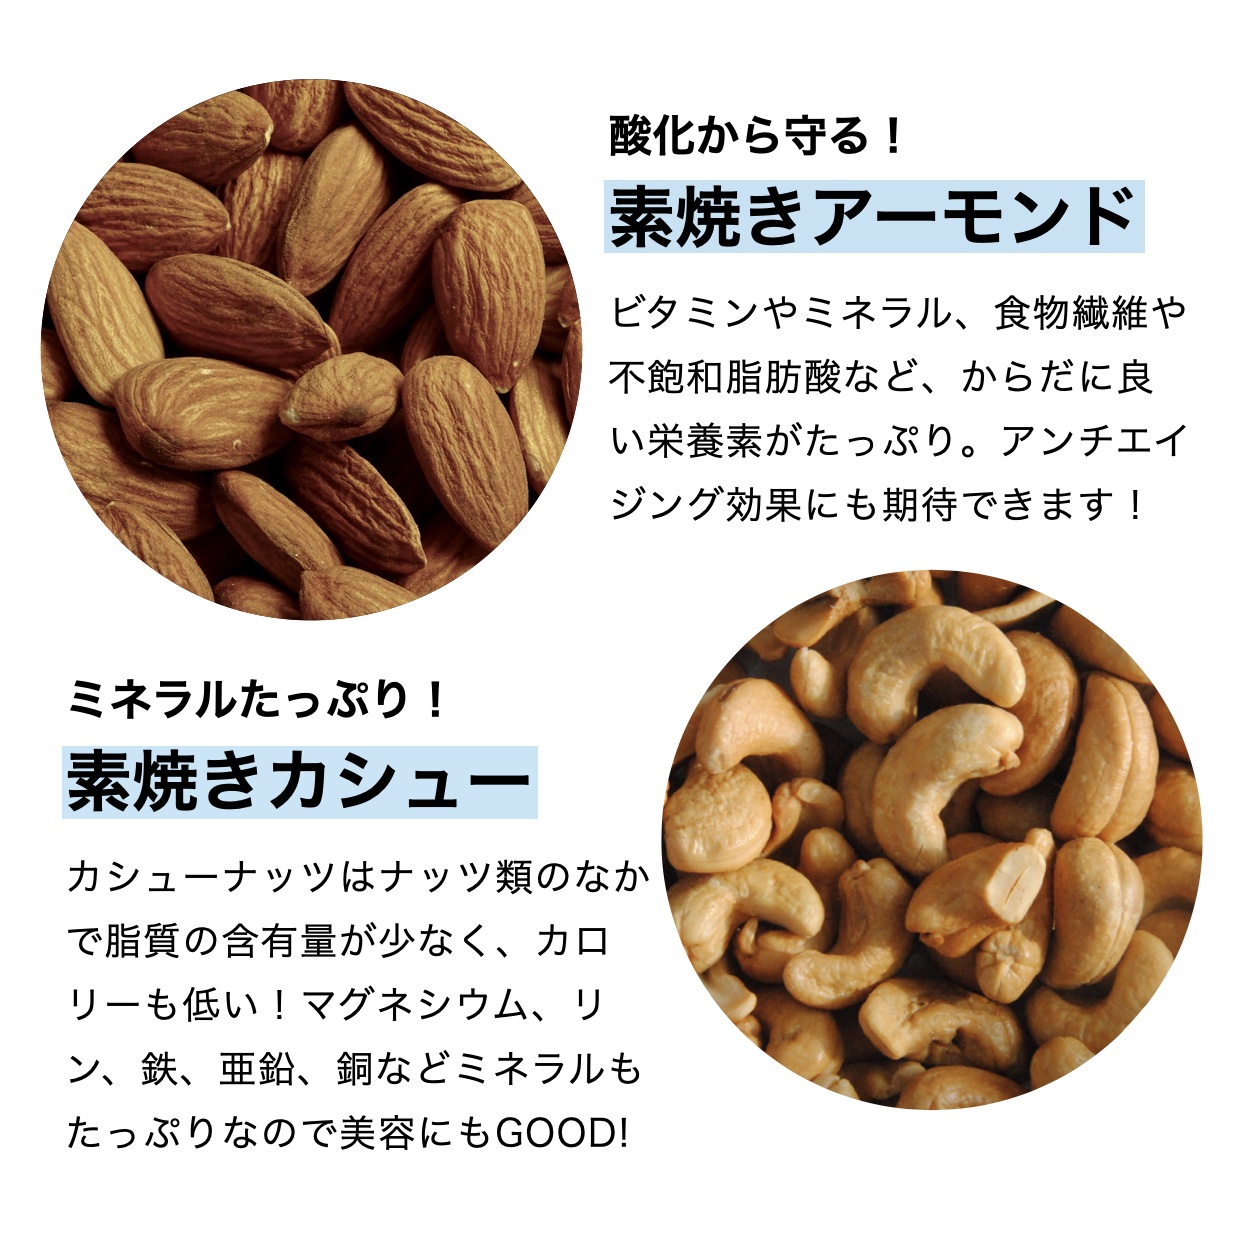 おきかえナッツ「たんぱくしっつ」に入っているアーモンドとカシューナッツの栄養価を説明しているイメージ